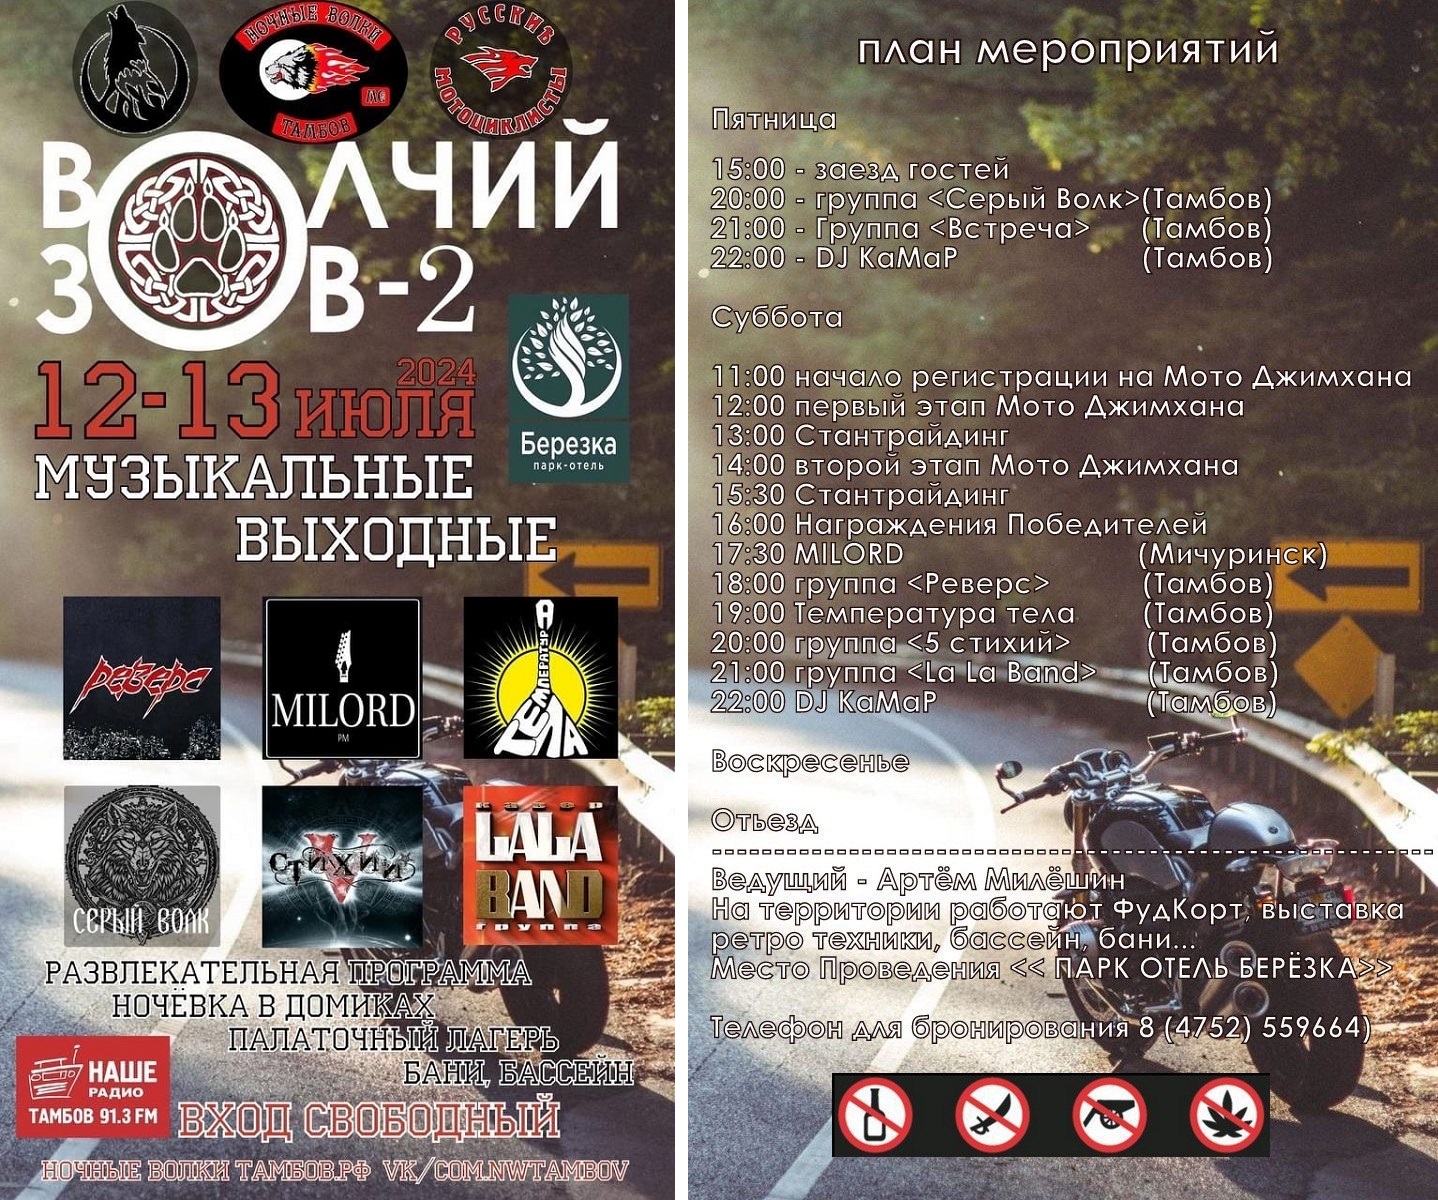 В Тамбовской области пройдёт фестиваль «Волчий зов»